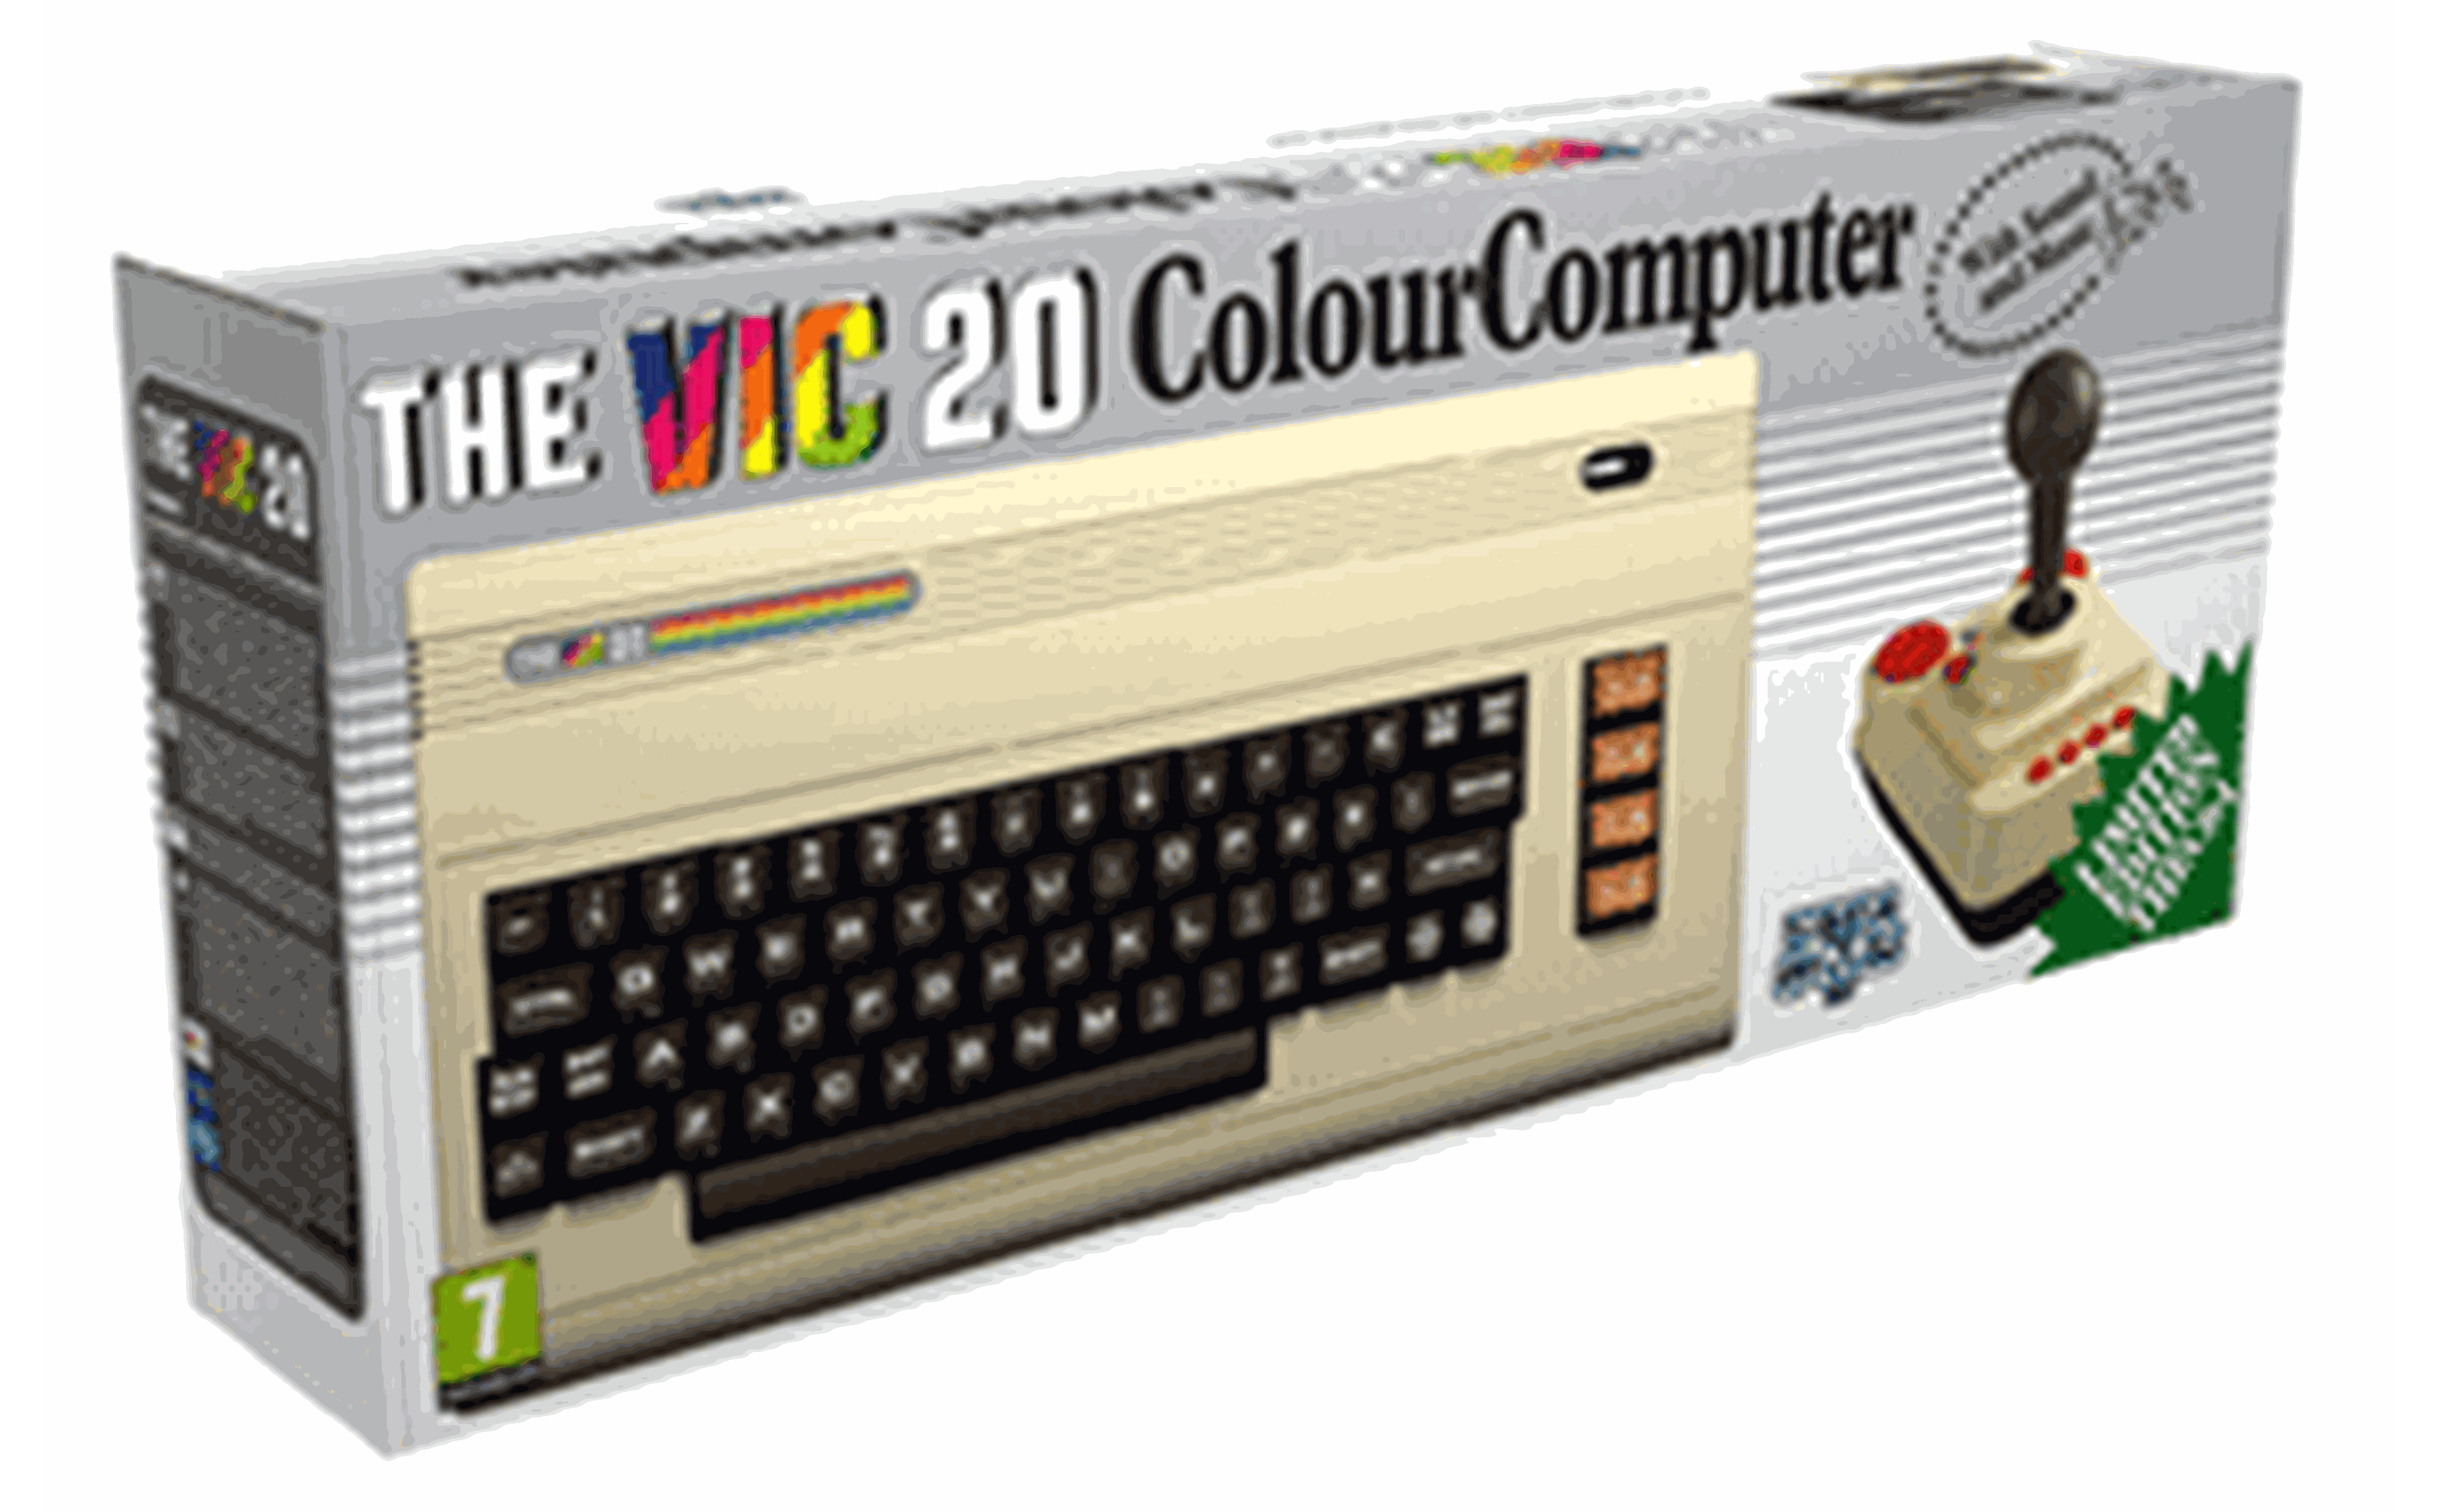 PROMO GAME retro c64 mini vic 20 OK